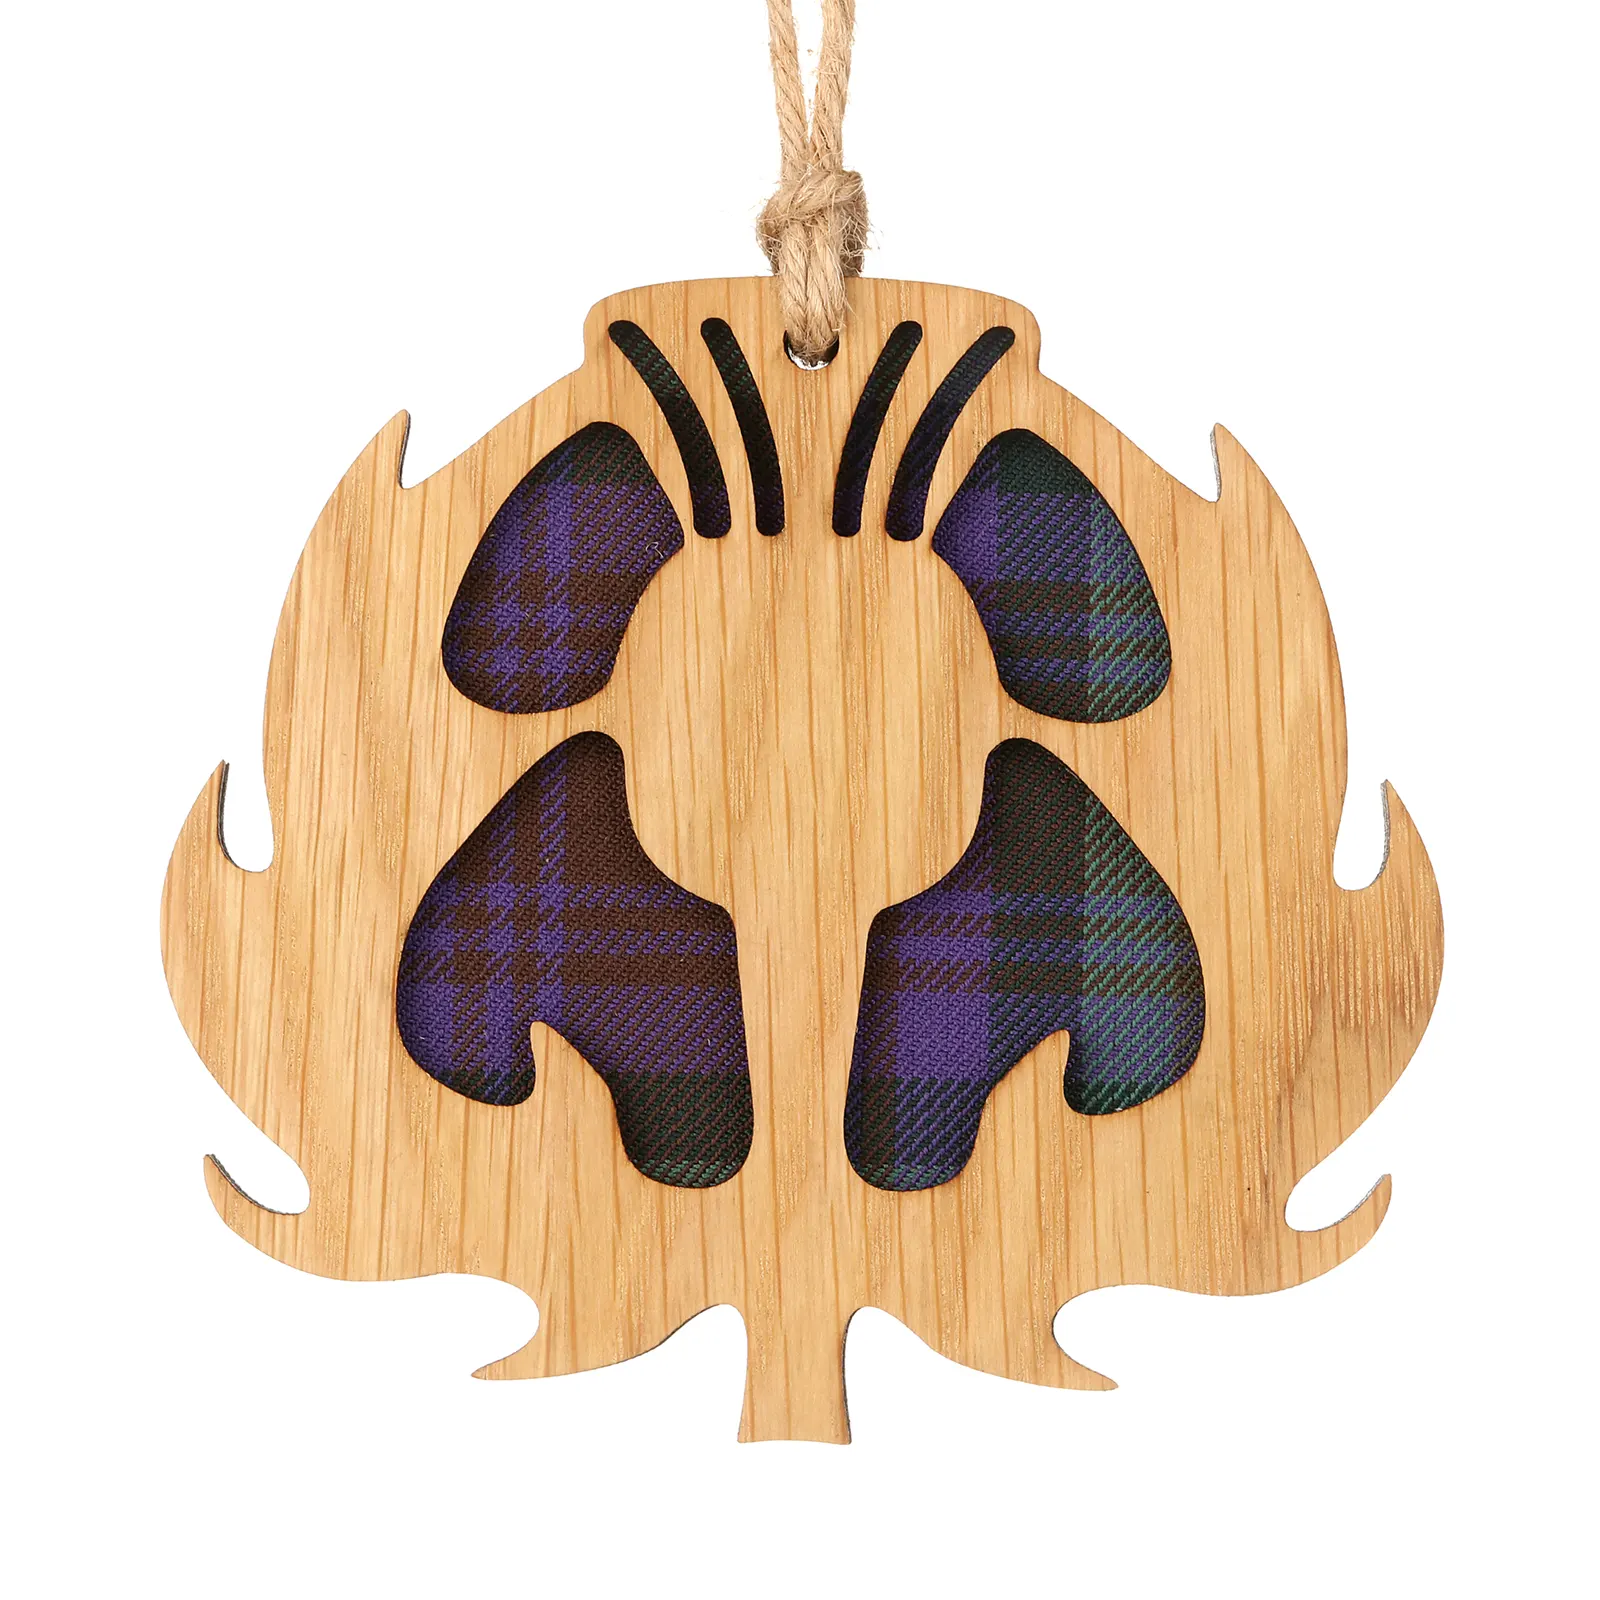 Scottish Thistle - Holz-Aufhänger mit schottischer Distel und Tartan-Hintergrund